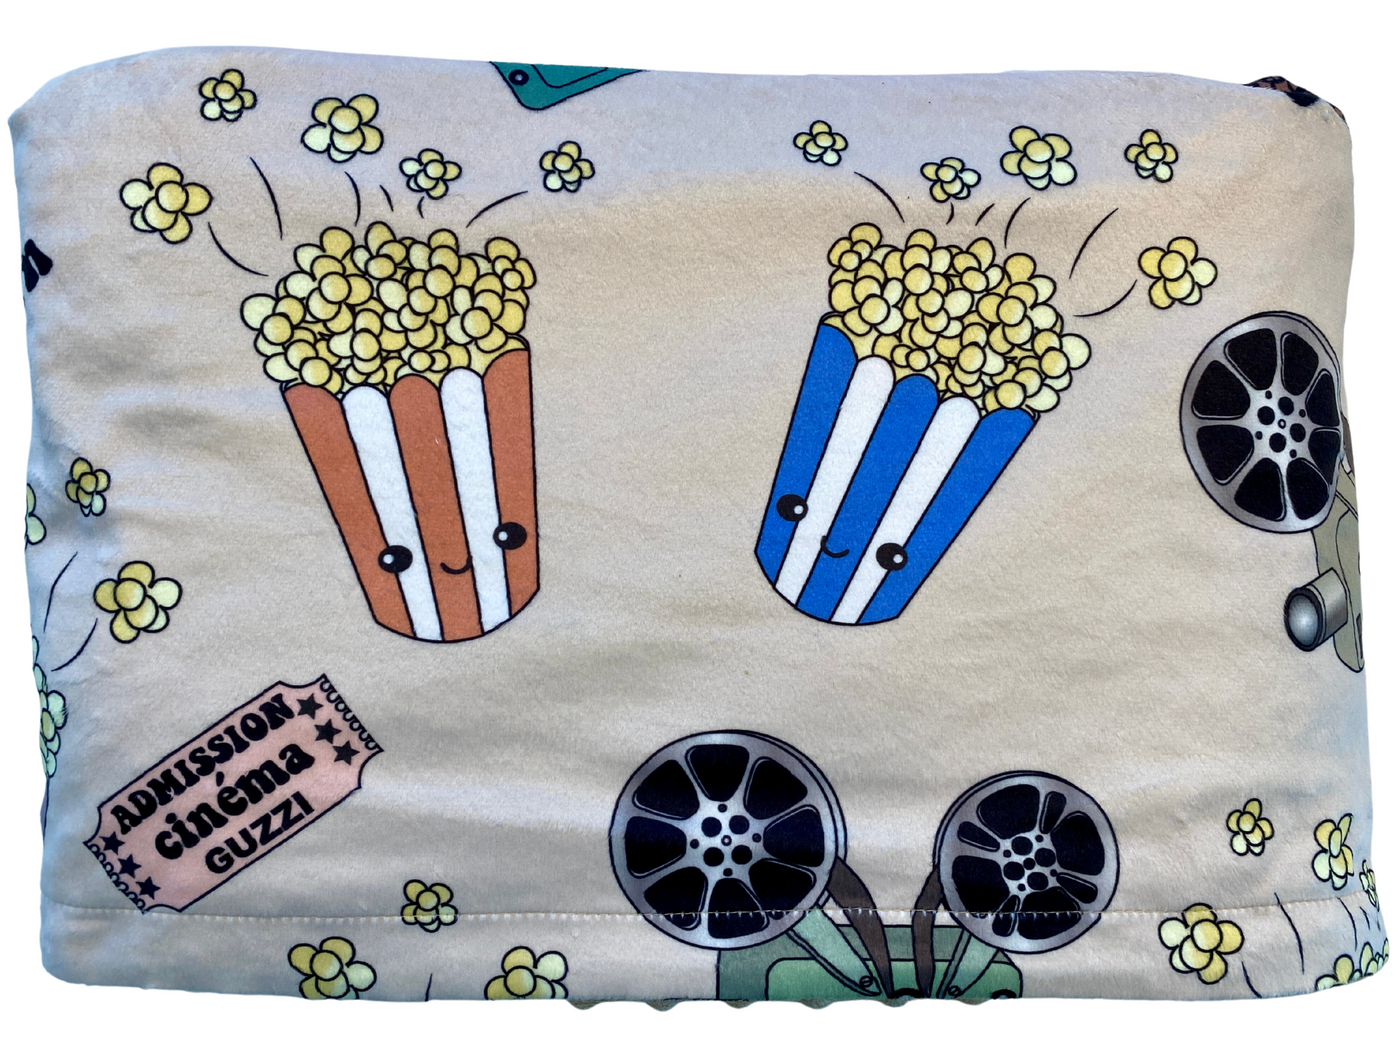 Couverture Géante : Cinéma et popcorn